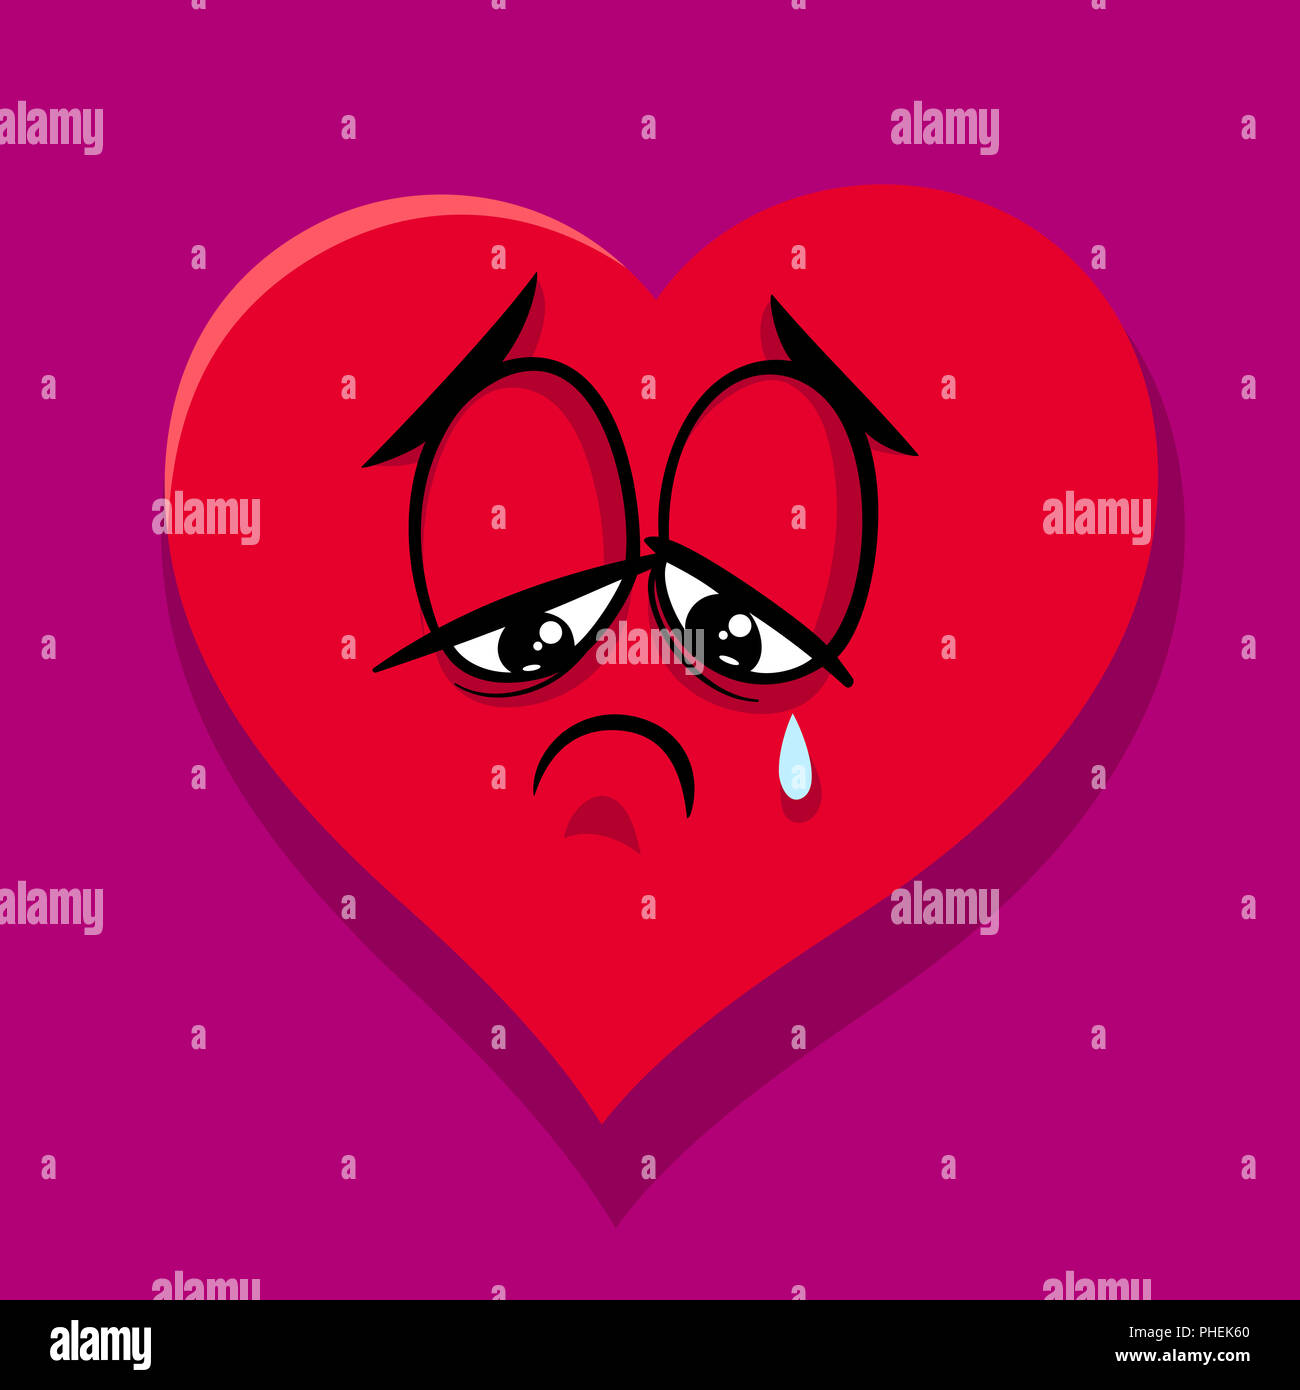 sad broken heart cartoon illustration Stock Photo - Alamy